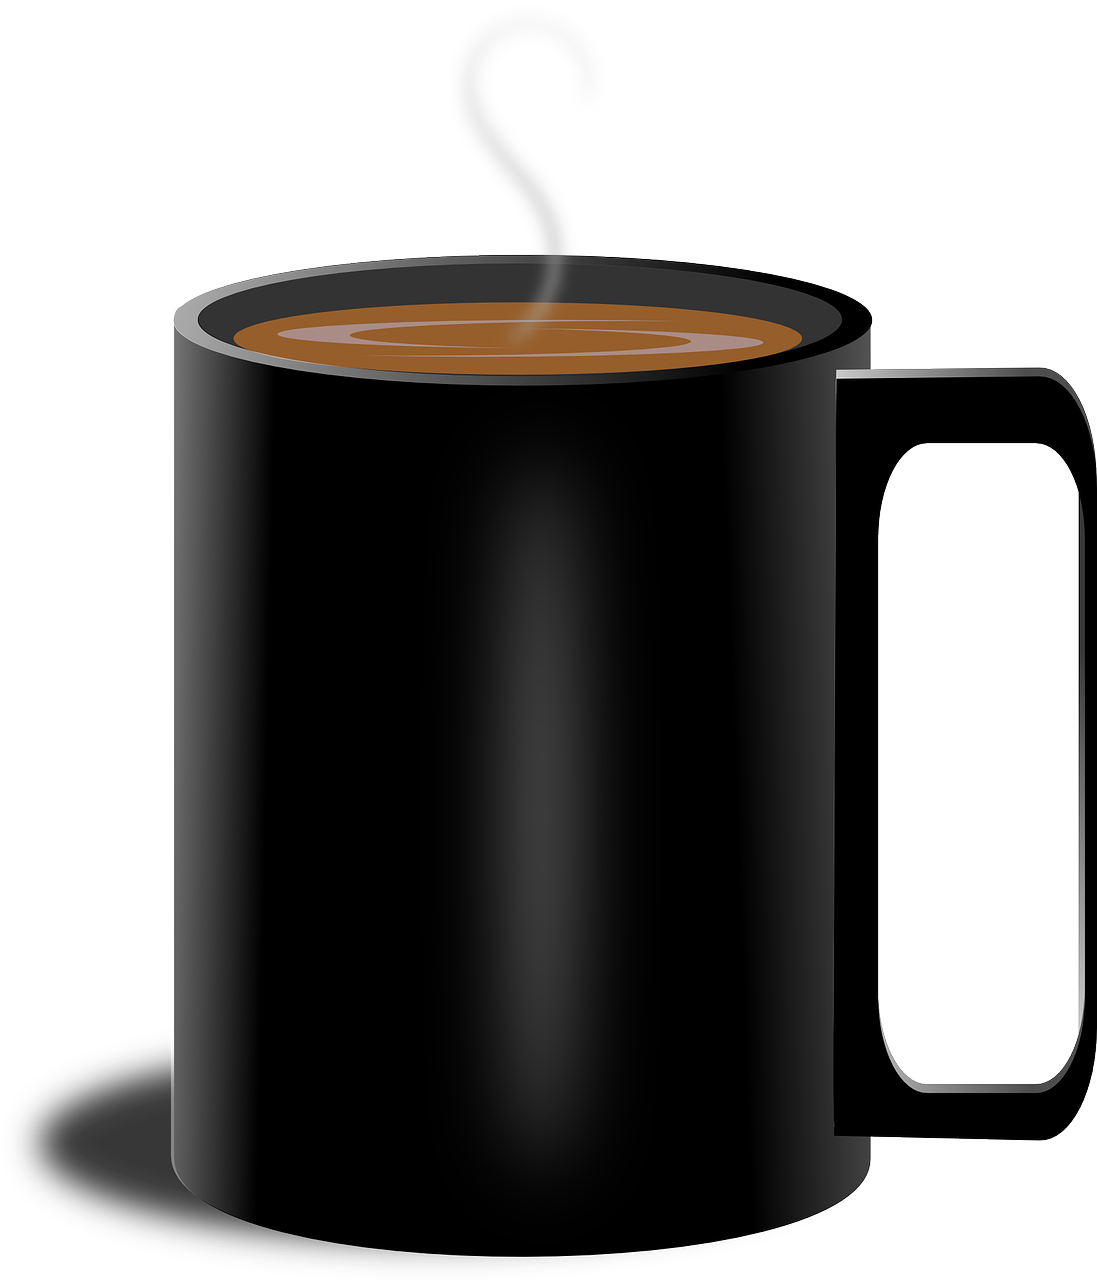 coffee mug transparent background